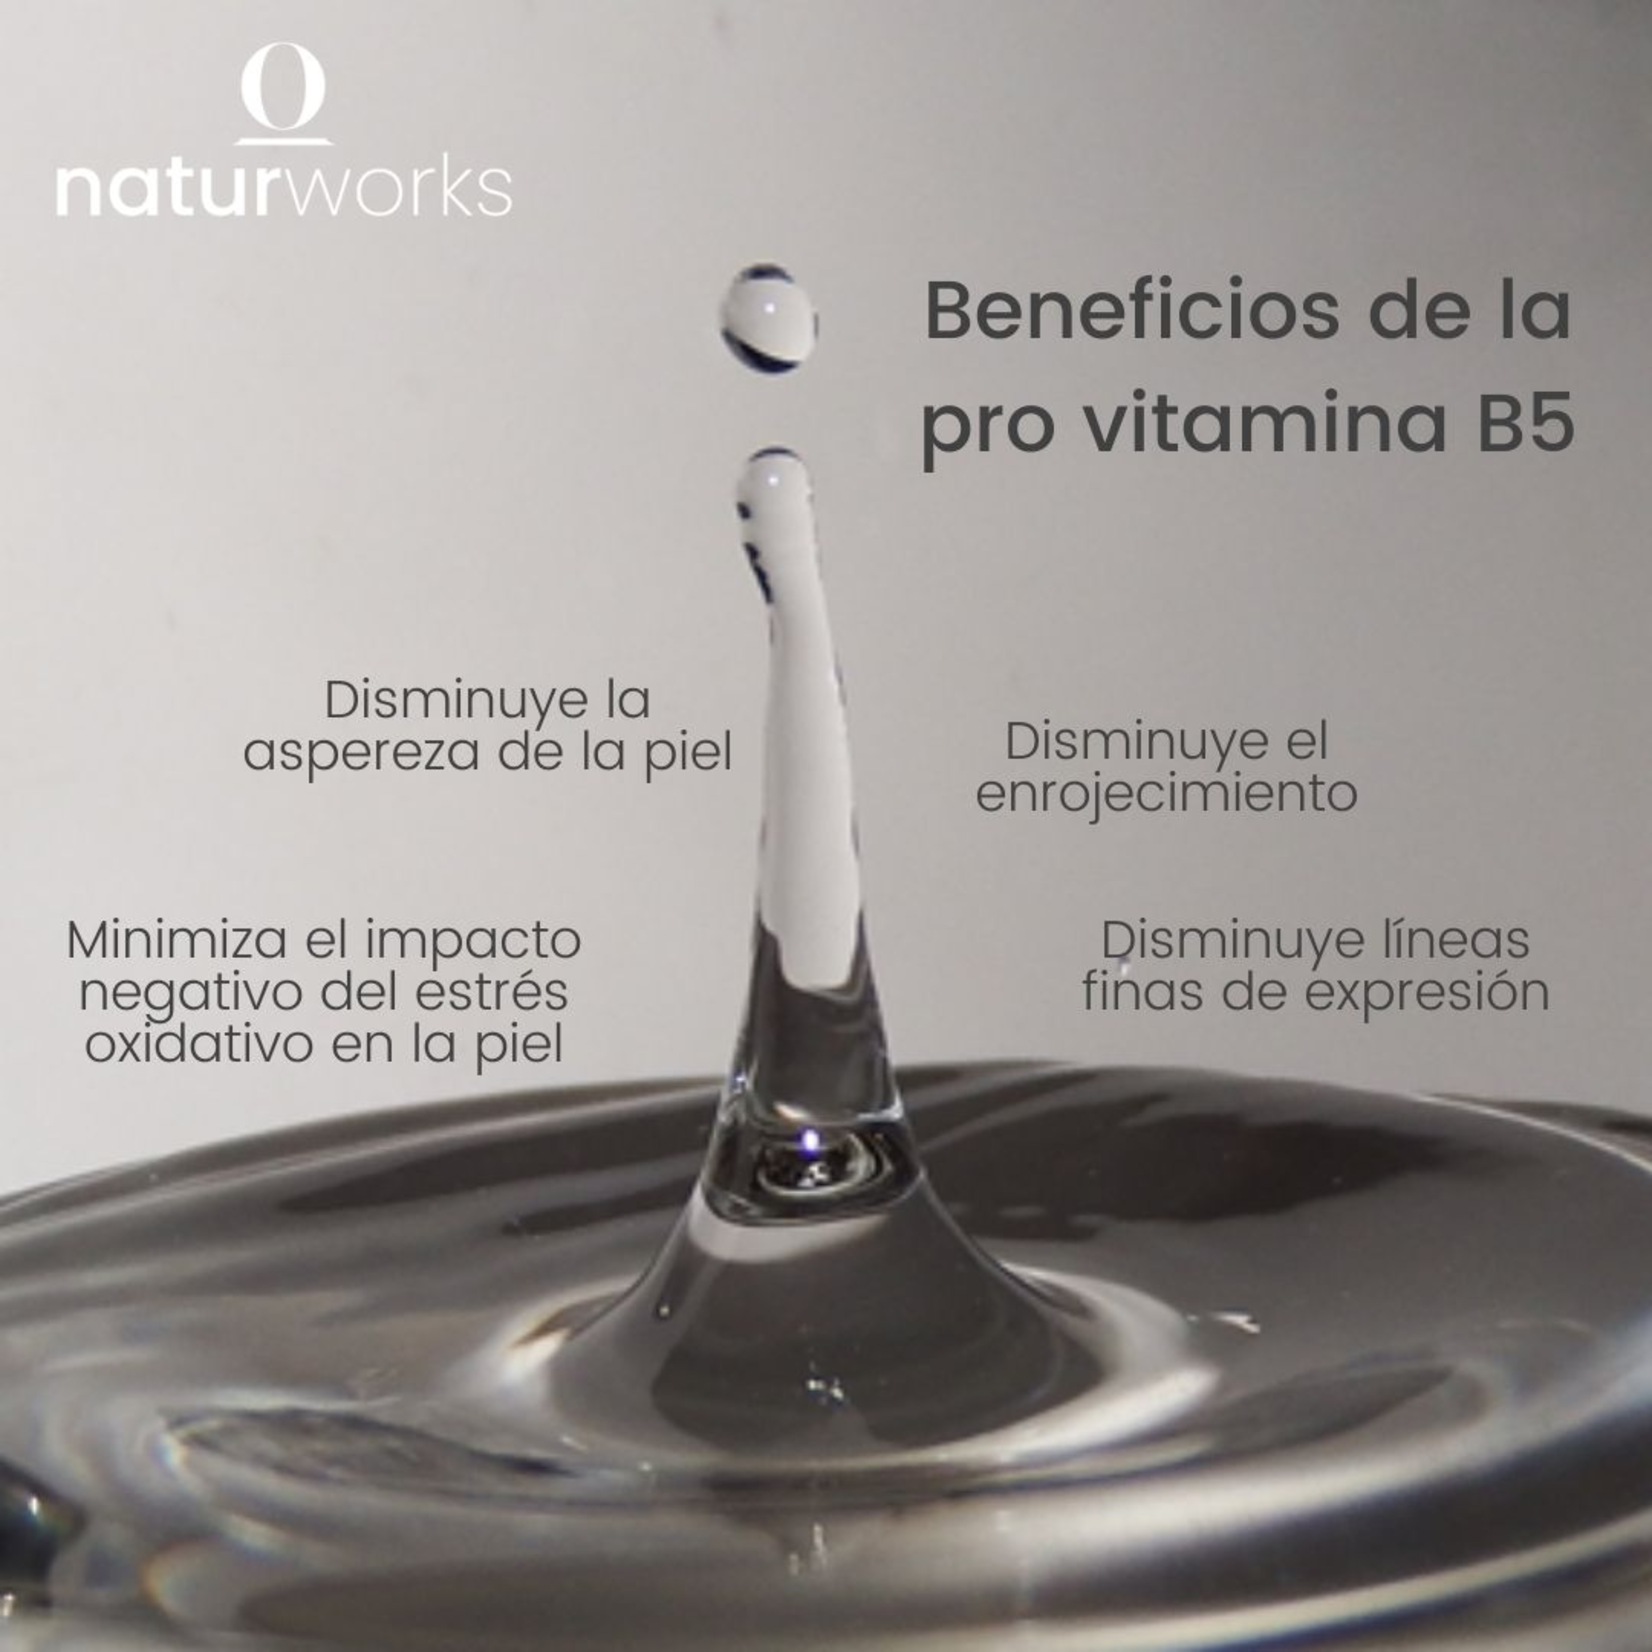 Naturworks Shampoo solido Naturworks Balance graso carbon activado y arbol de te 100 gr